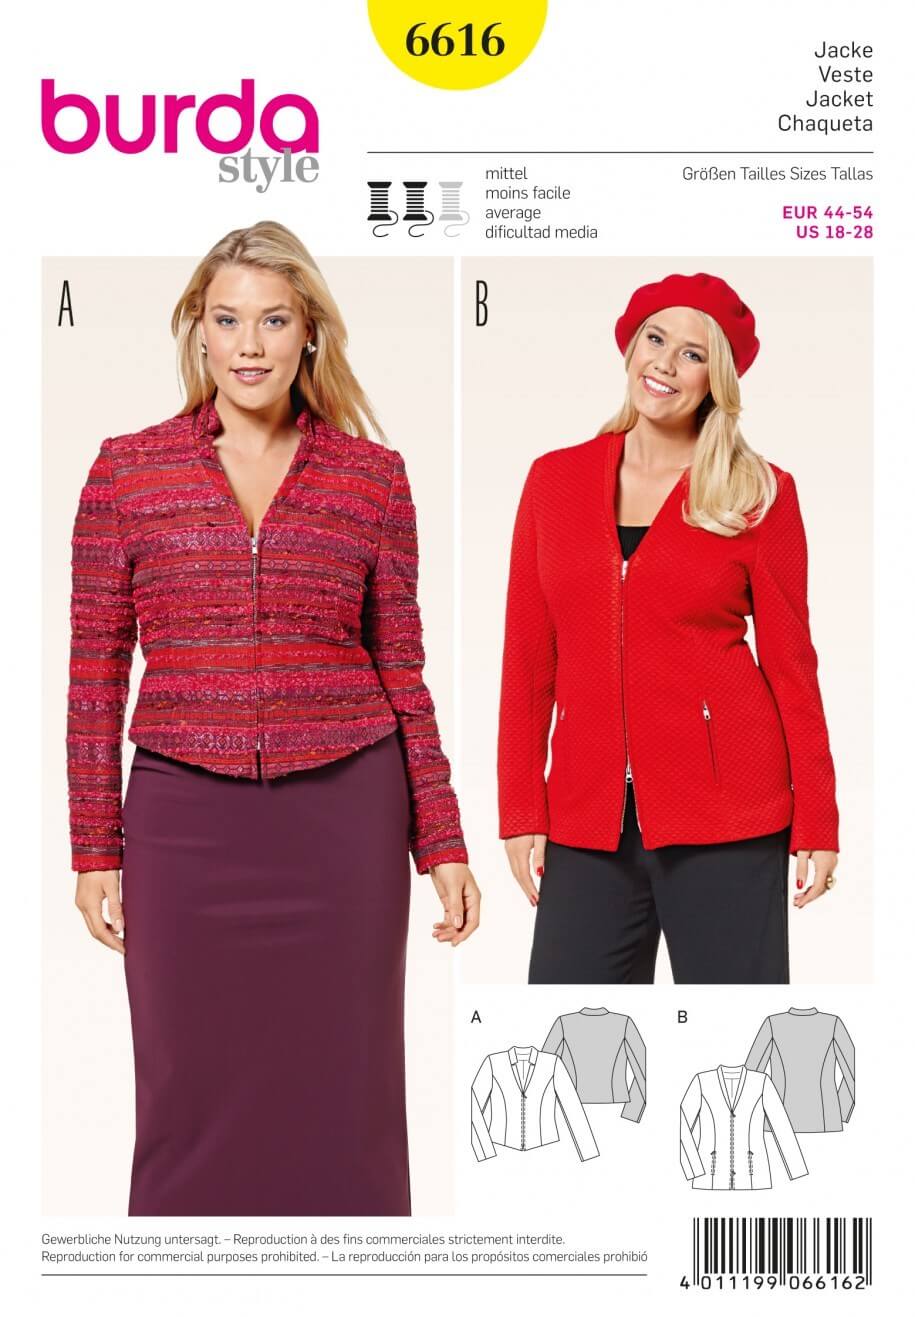 Burda Style Casual Jacket Zipped Dress Sewing Pattern 6616